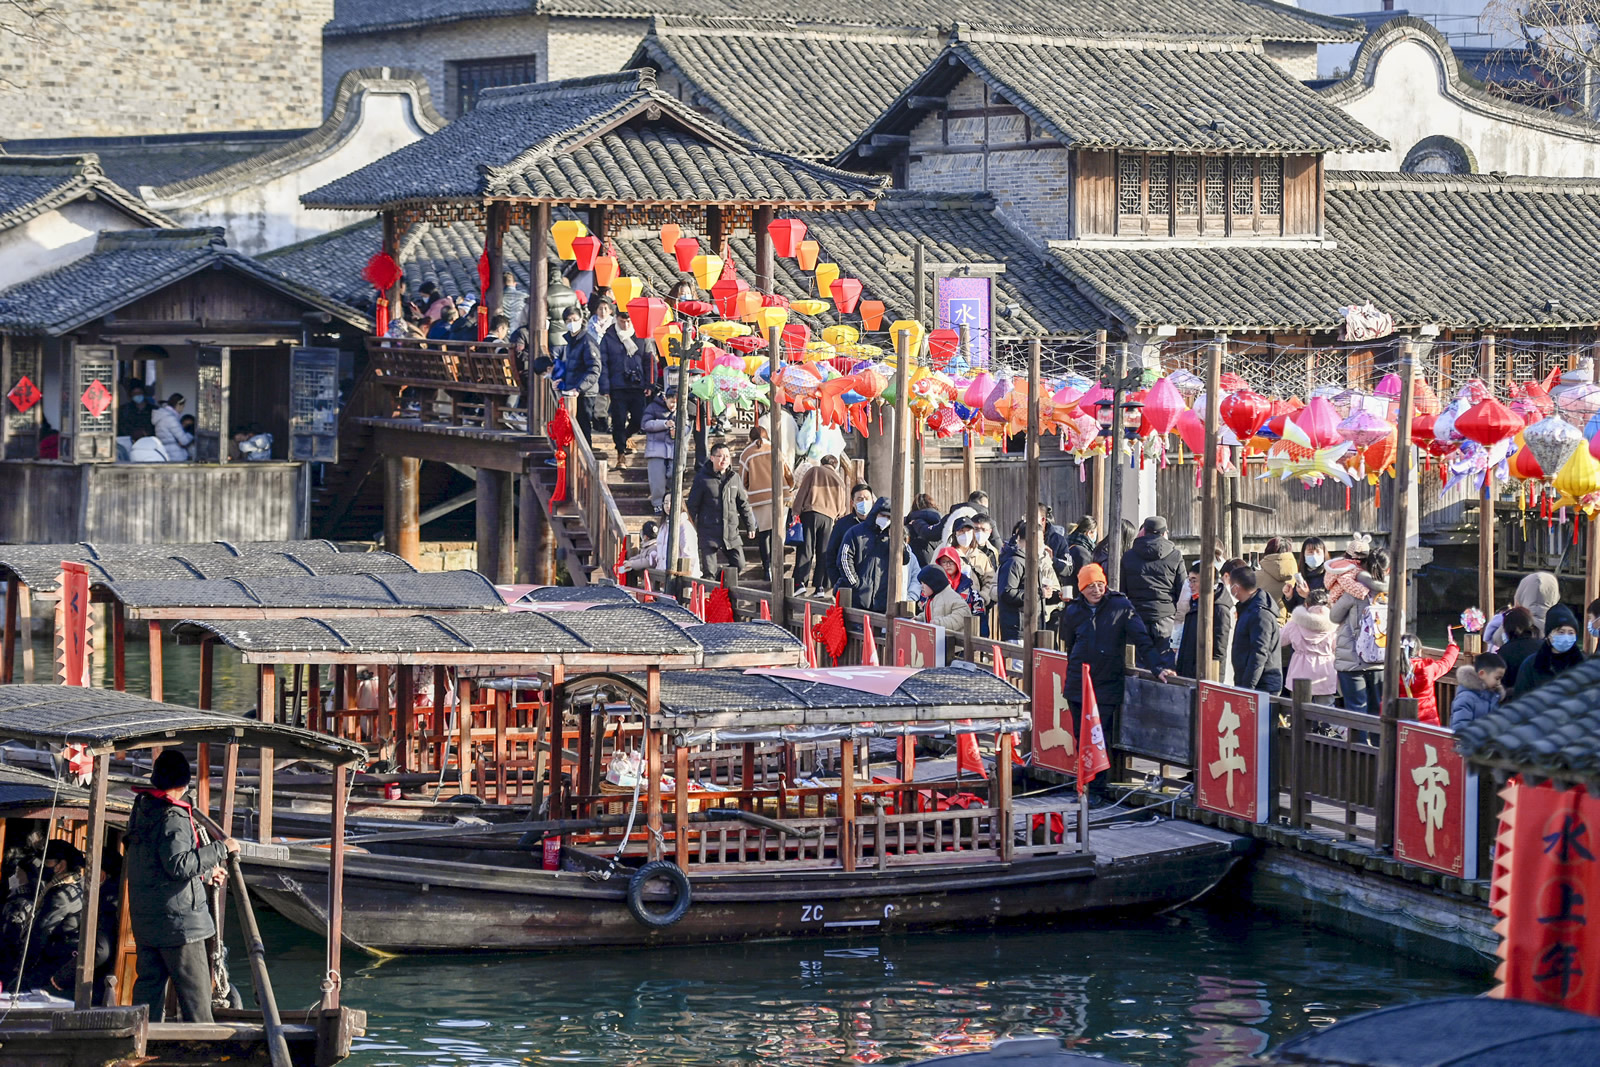 Turisté navštěvují „trh na vodě“ ve scénické oblasti Wuzhen ve městě Tongxiang v provincii Zhejiang v Číně. (Huang Zongzhi/Agentura Nová Čína)